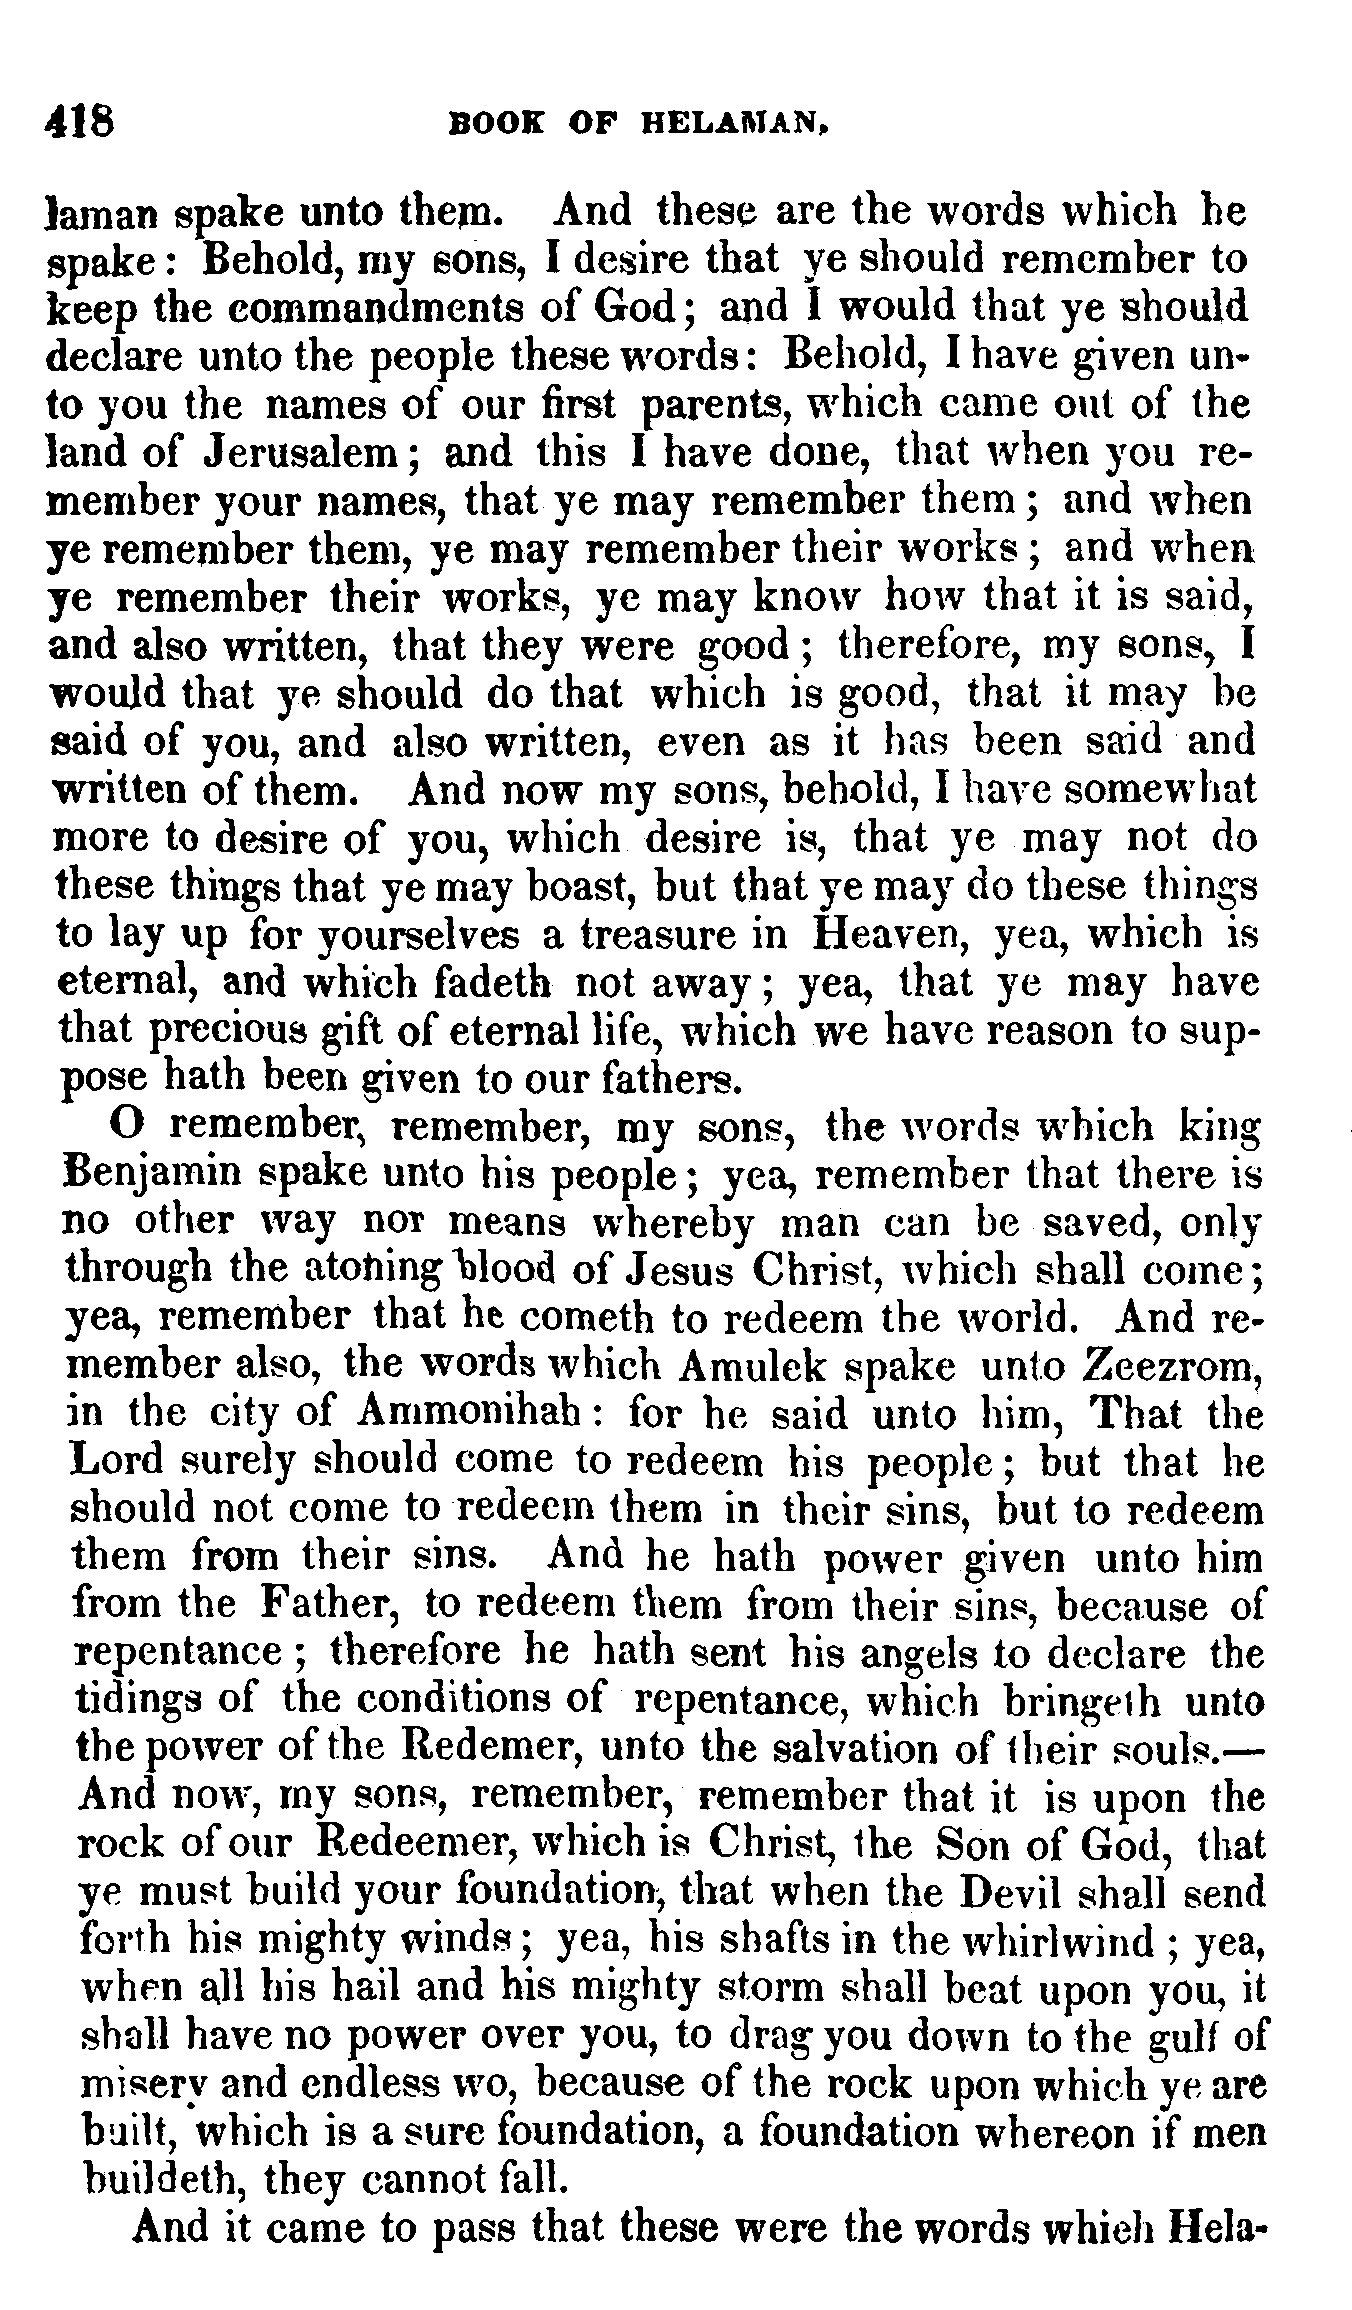 Book Of Mormon - Helaman - Page 418